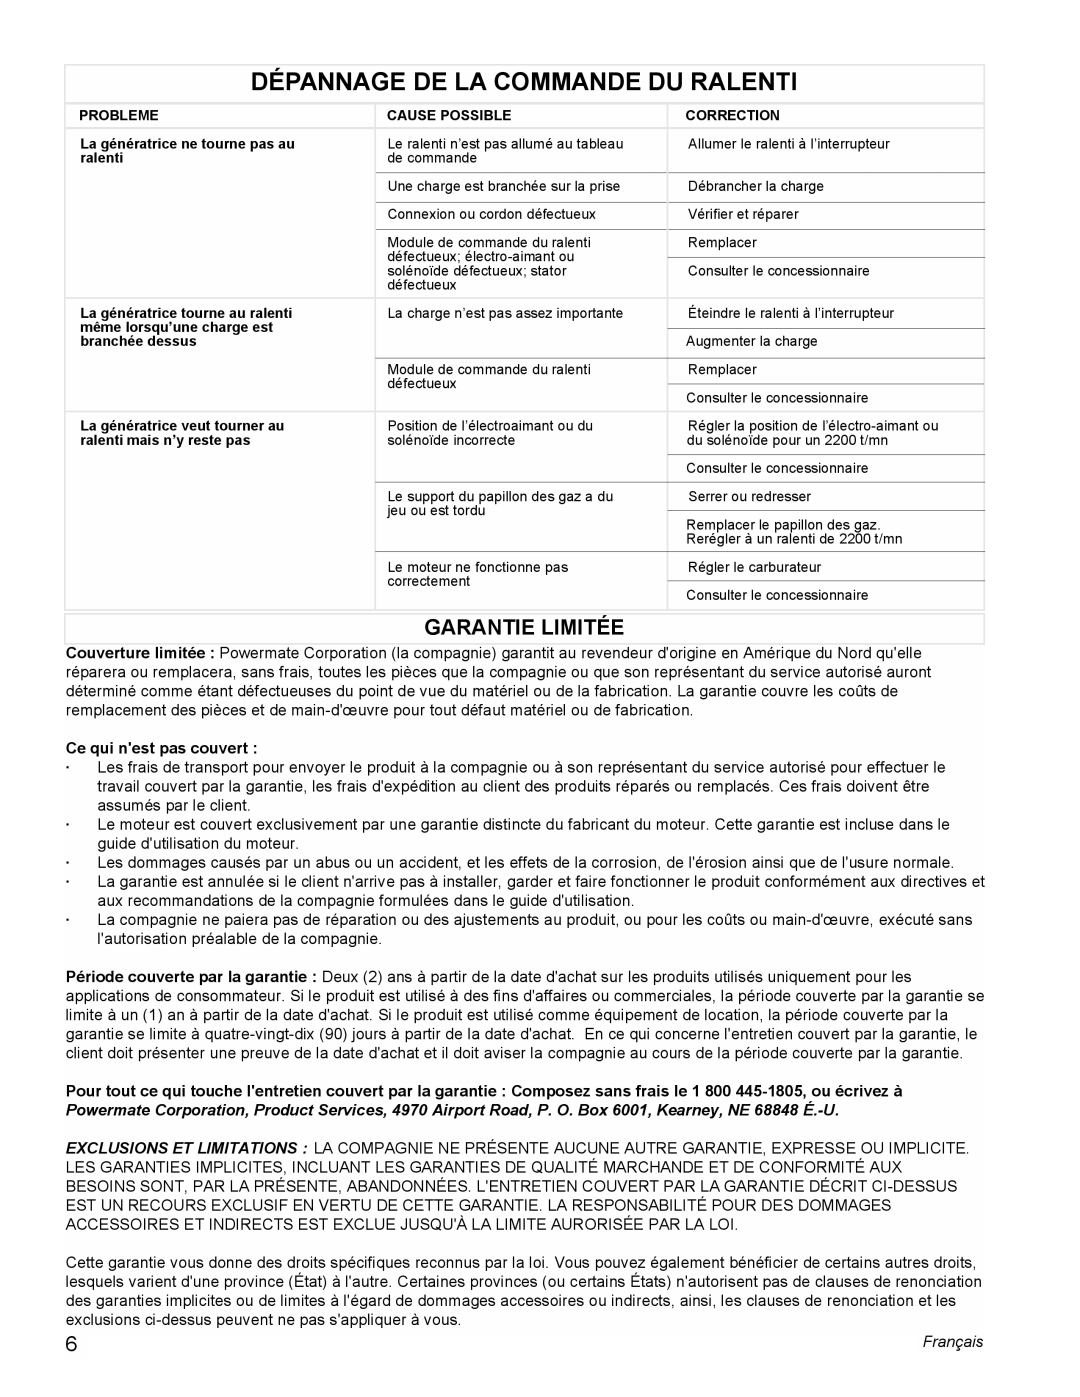 Powermate PMC605000 manual Dépannage De La Commande Du Ralenti, Garantie Limitée, Ce qui nest pas couvert, Français 